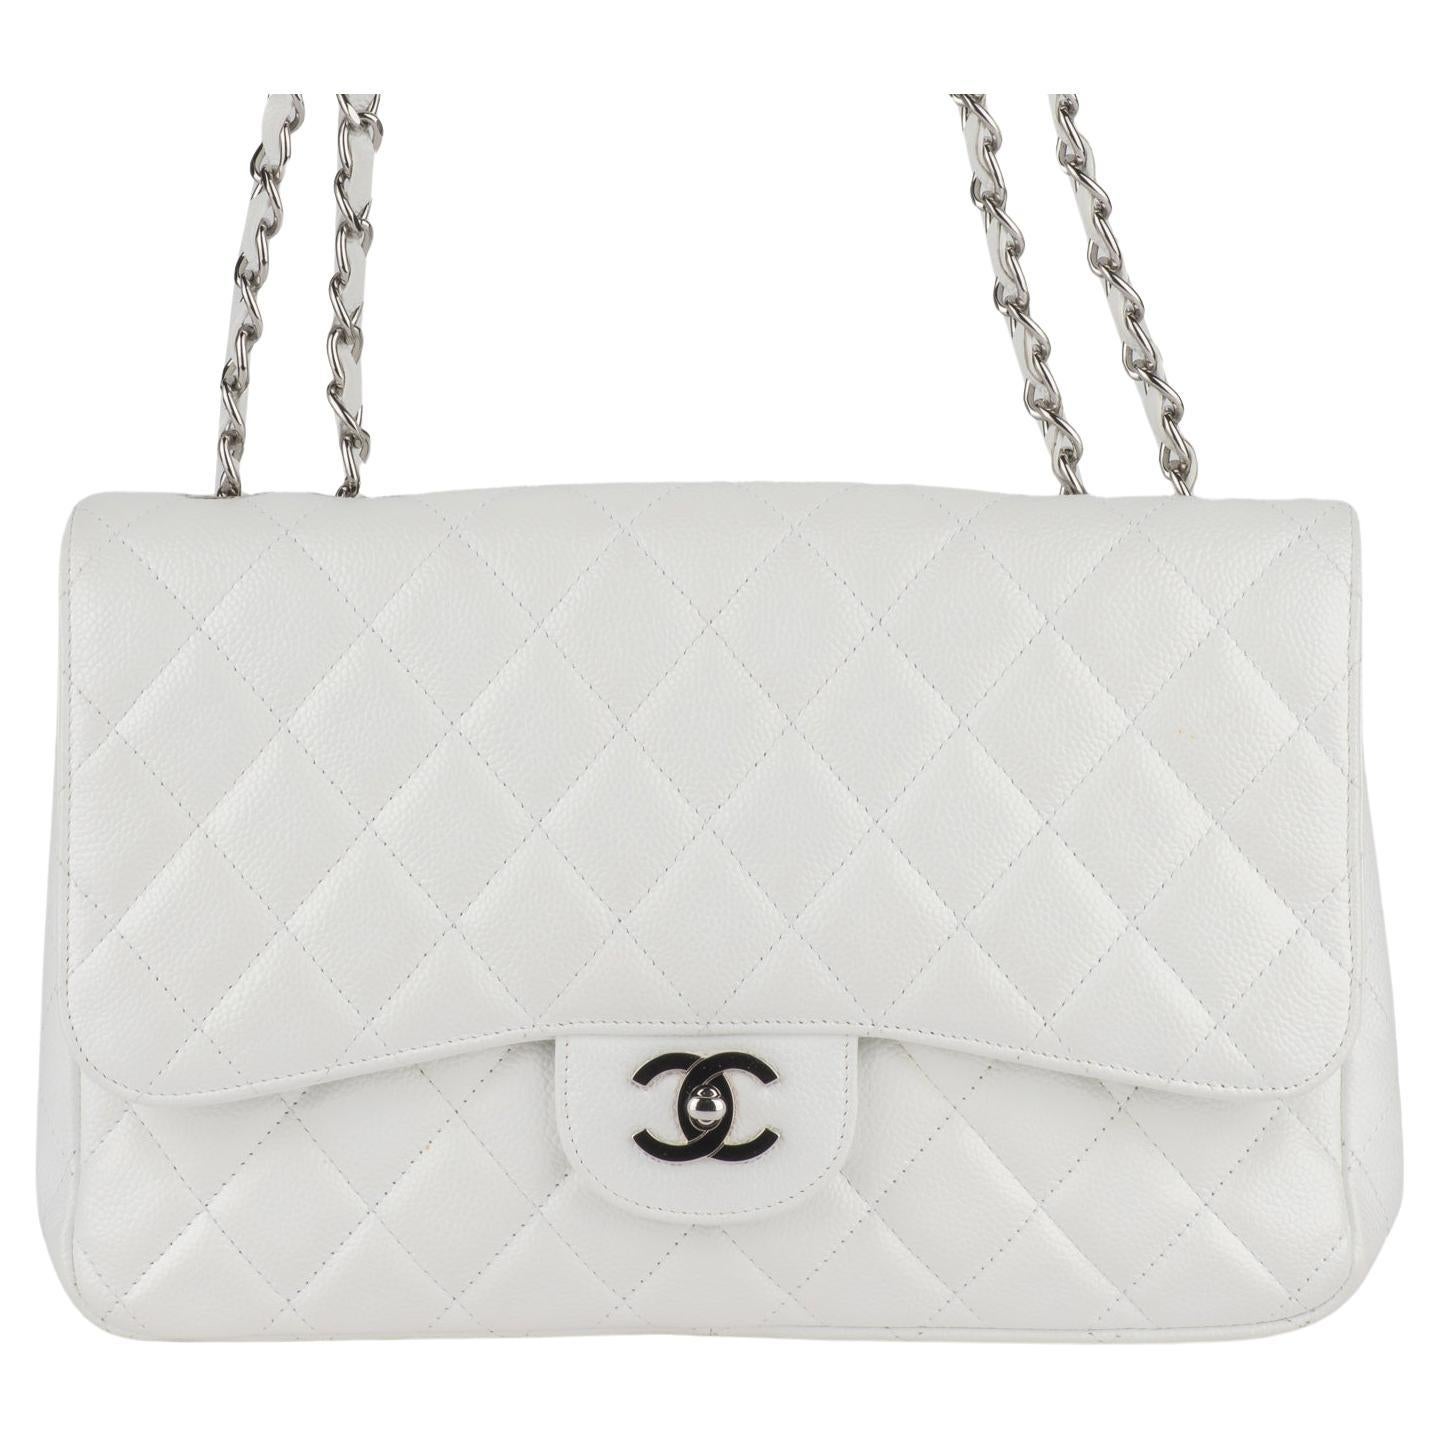 Chanel Jumbo Single Flap Bag aus weißem, rautenförmig gestepptem Leder. Ein mit Lederfäden versehener, polierter silberner Kettenglied-Schulterriemen, eine aufgesetzte Tasche auf der Rückseite und ein passender silberner klassischer